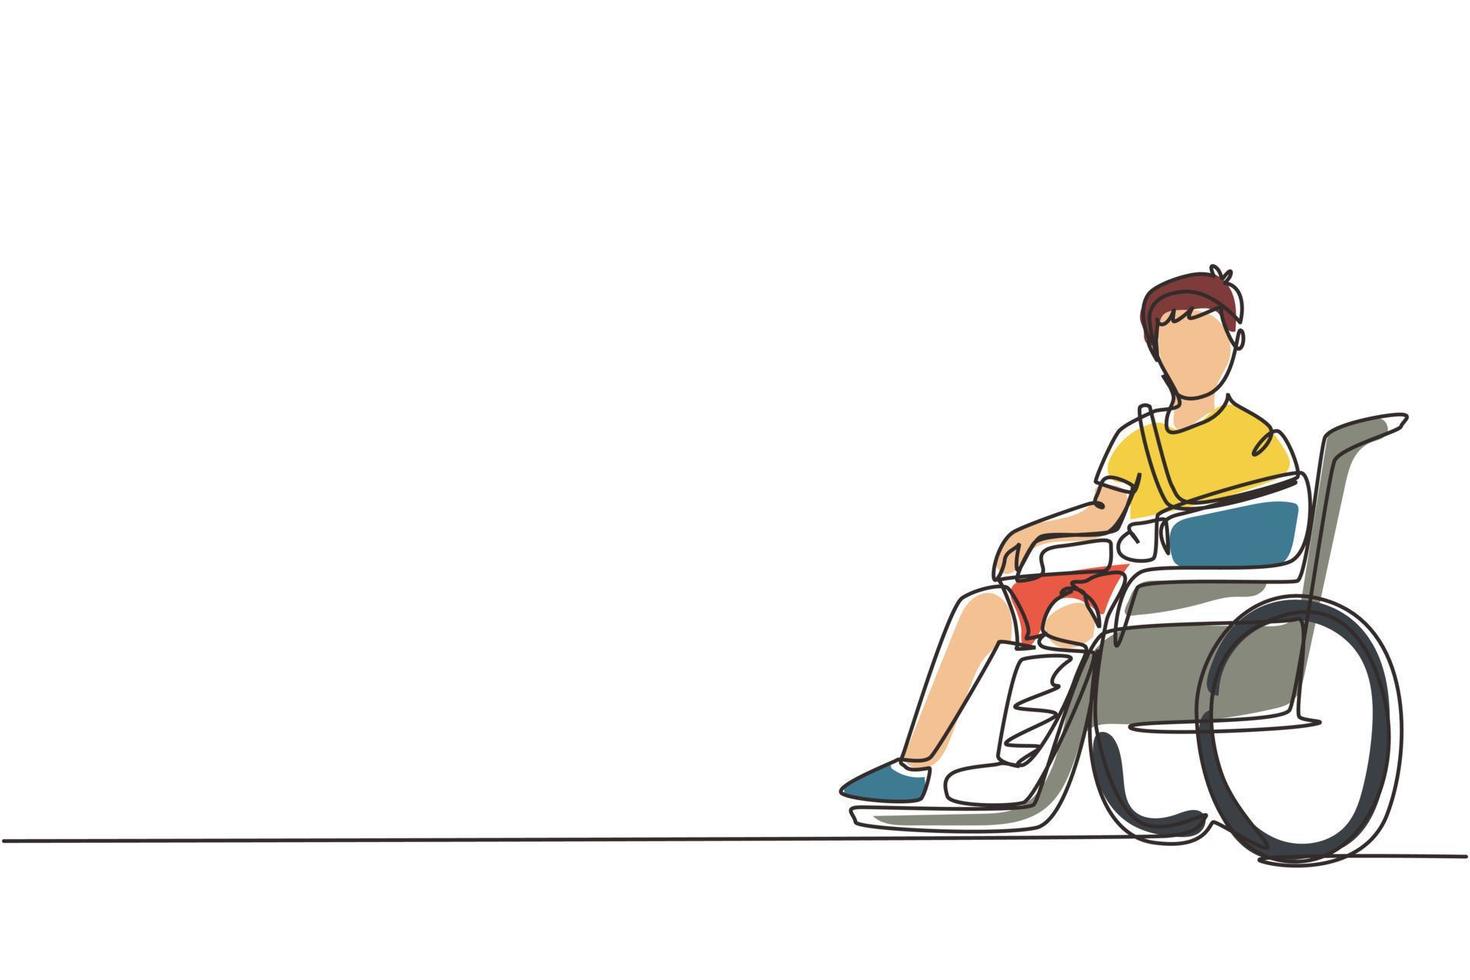 uma linha contínua desenhando menino chateado ferido em gesso ou gesso, sentado na cadeira de rodas sofrendo de dor. acidente na perna. menino ferido. ilustração gráfica de vetor de desenho de linha única